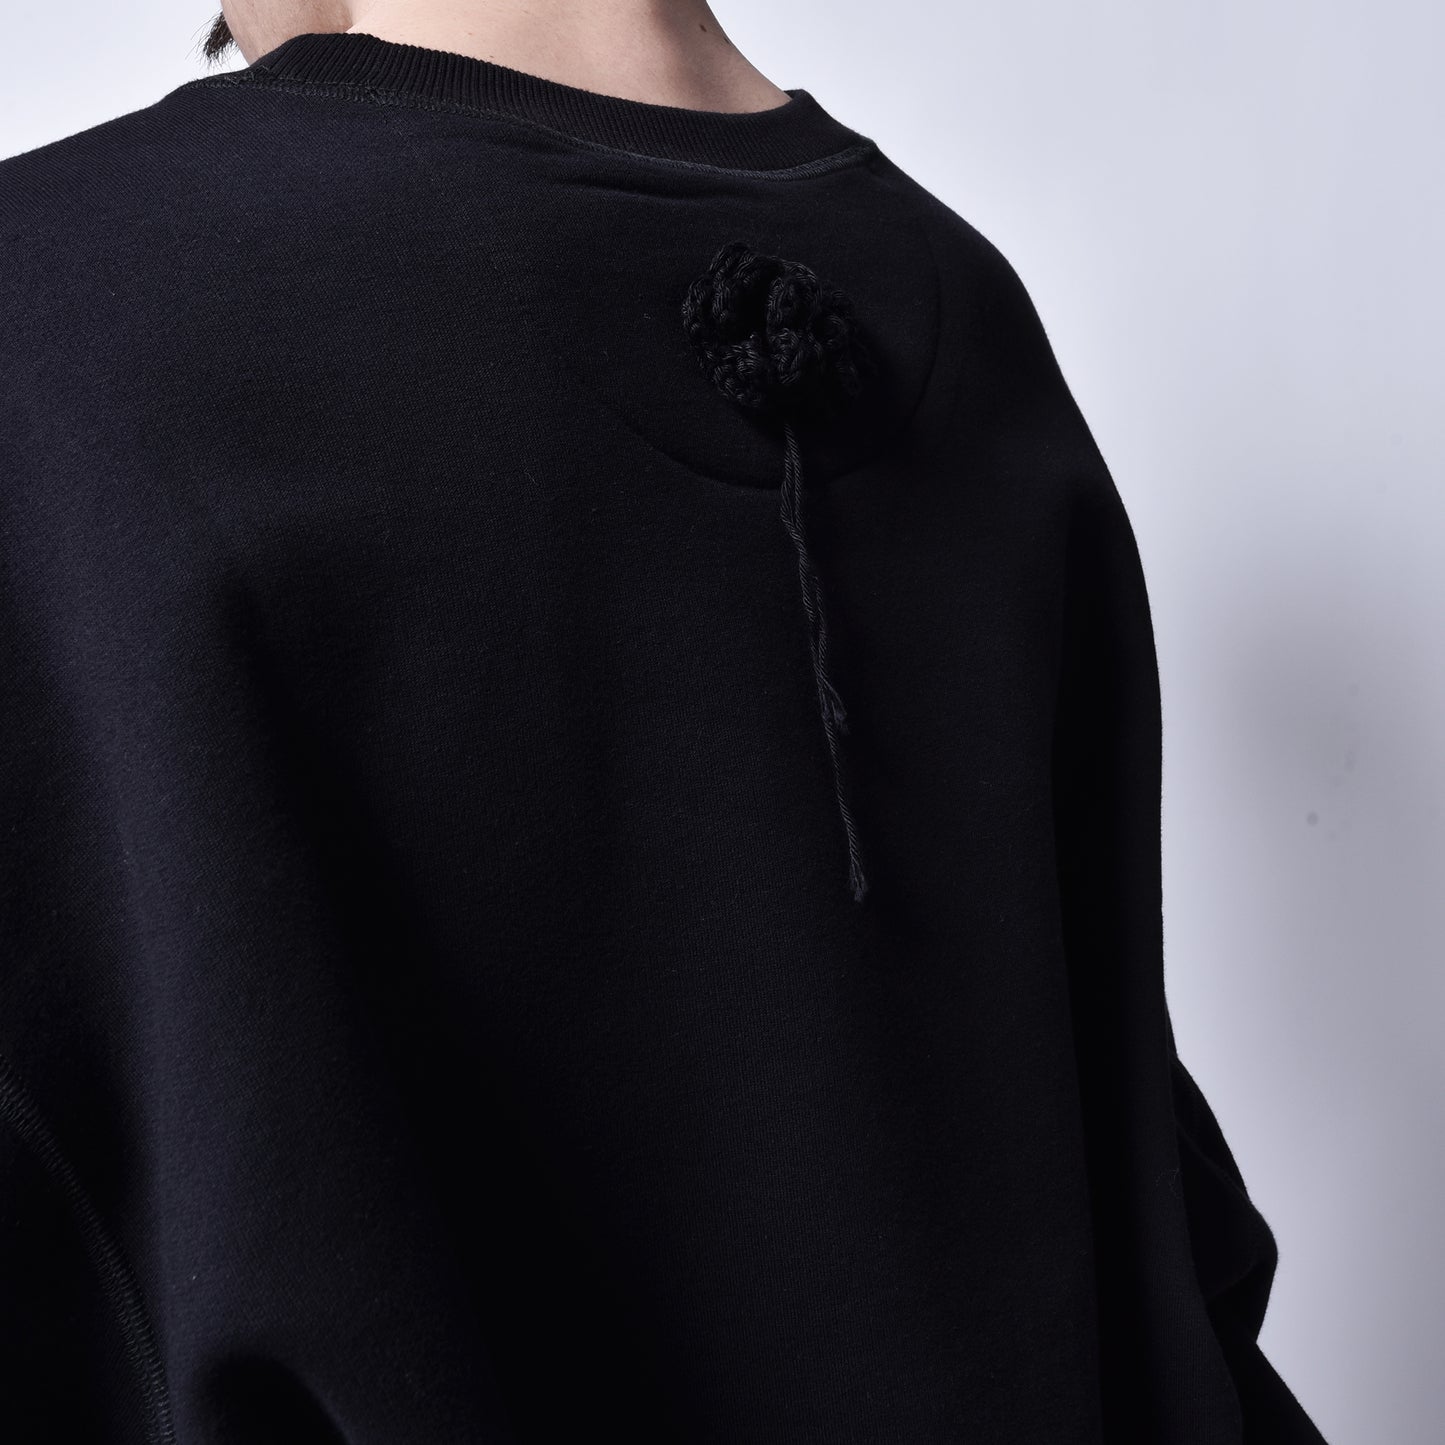 OLOAPITREPS / Embroidery batwing flower sweatshirt BK